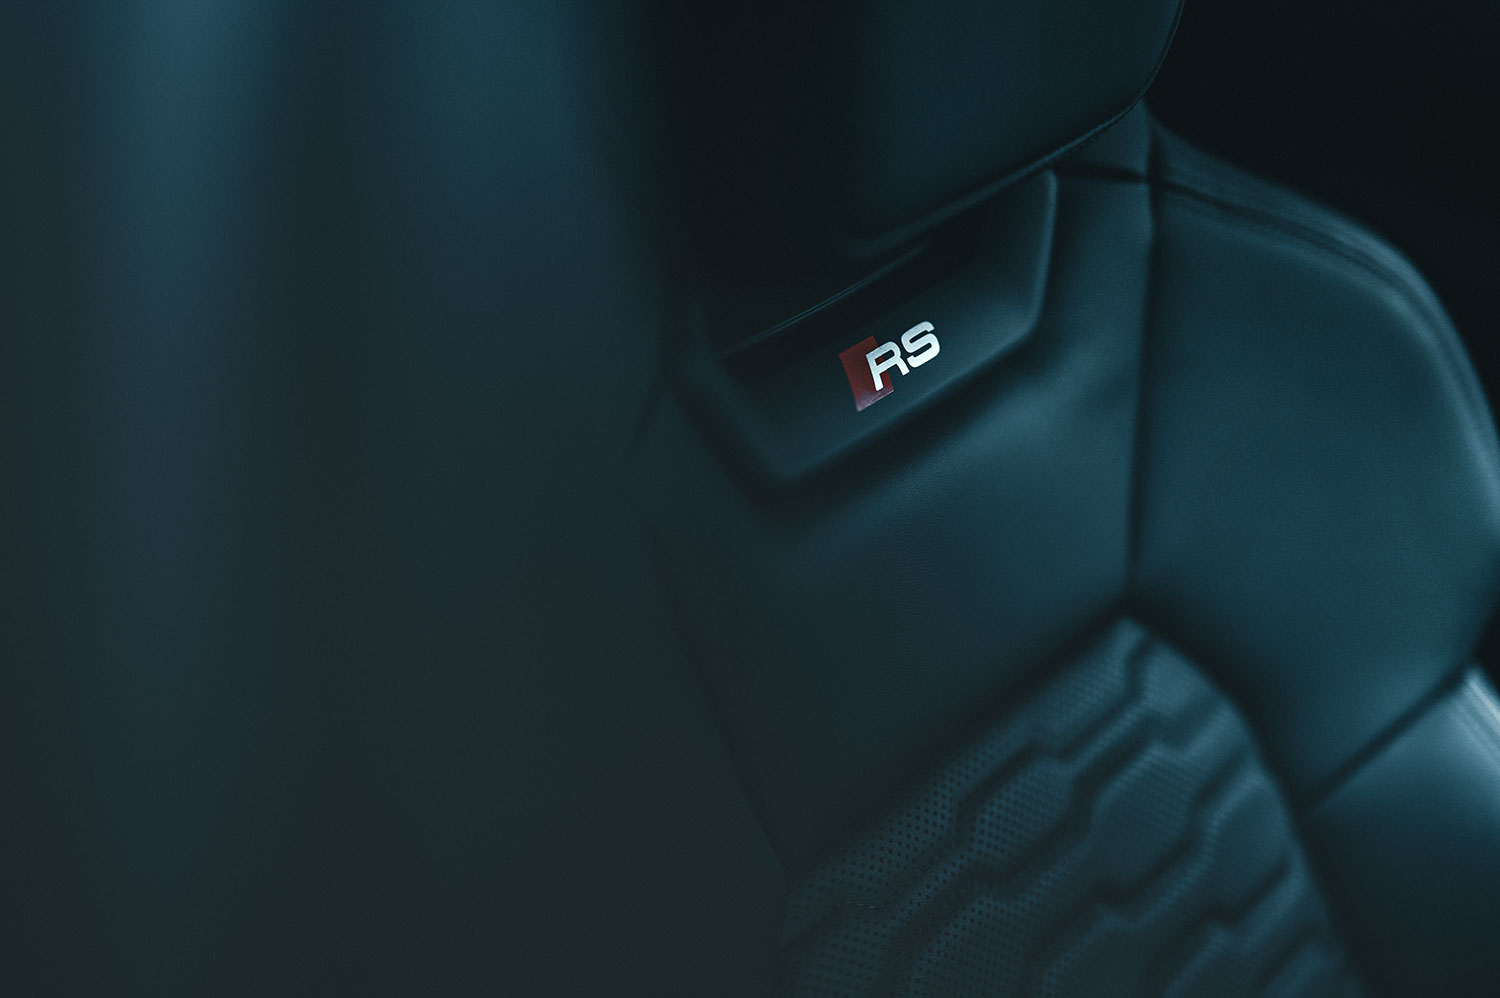 Detailaufnahme des Audi RS Sitzes